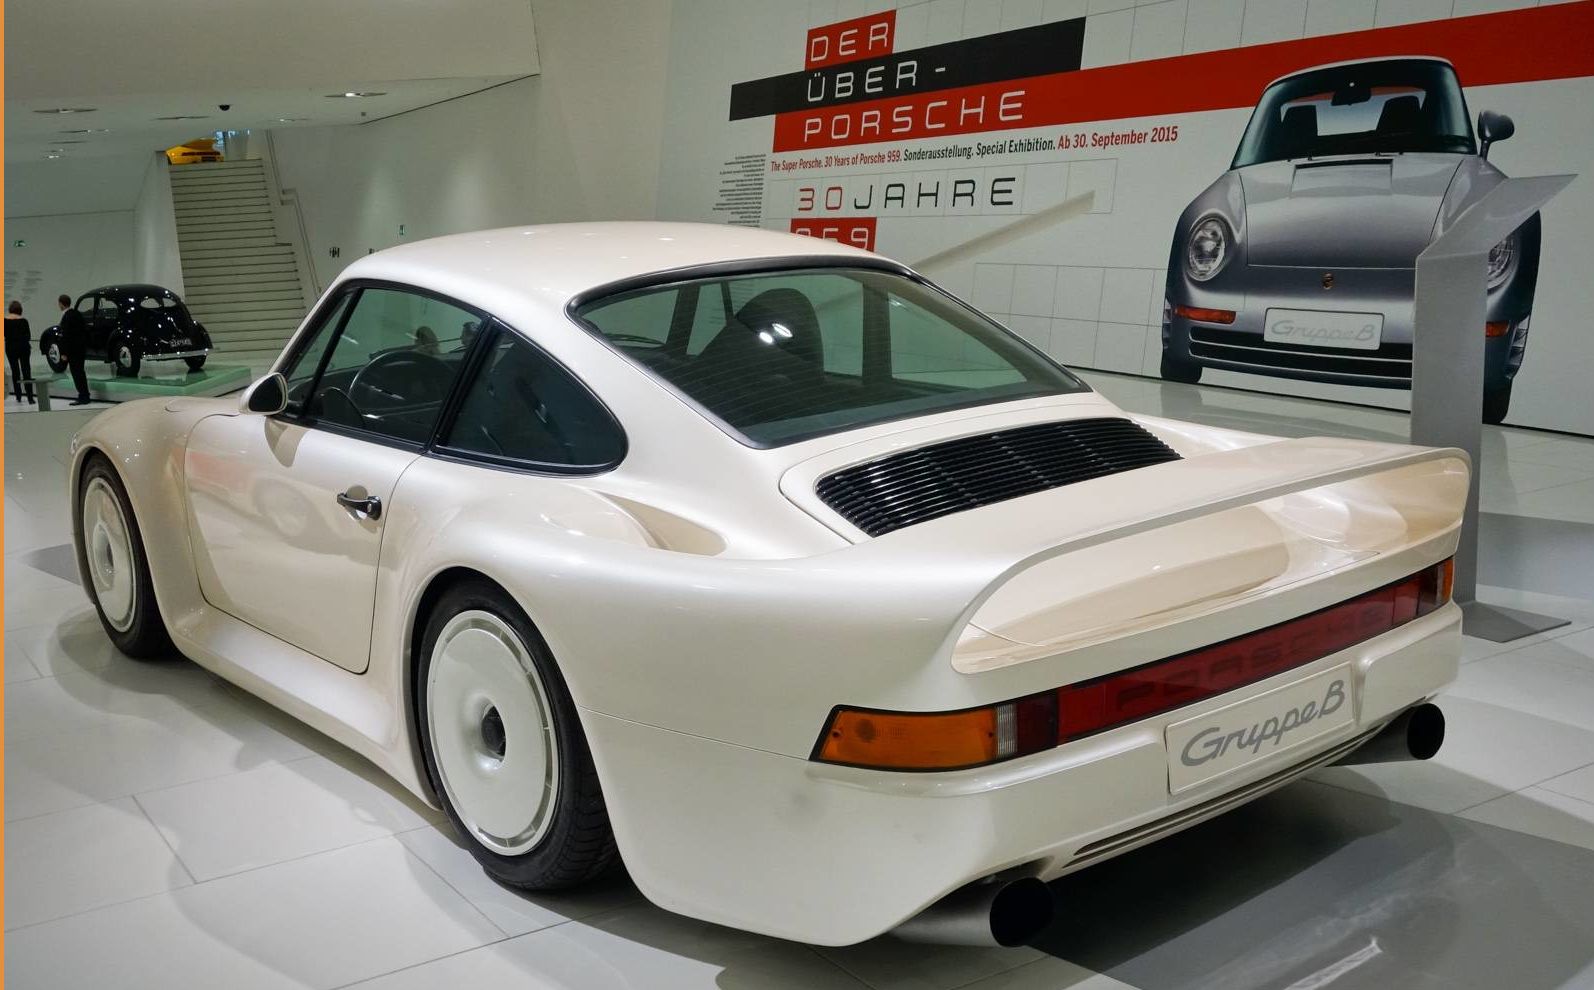 A 1983 Porsche 959 exhibited at the Porsche Museum